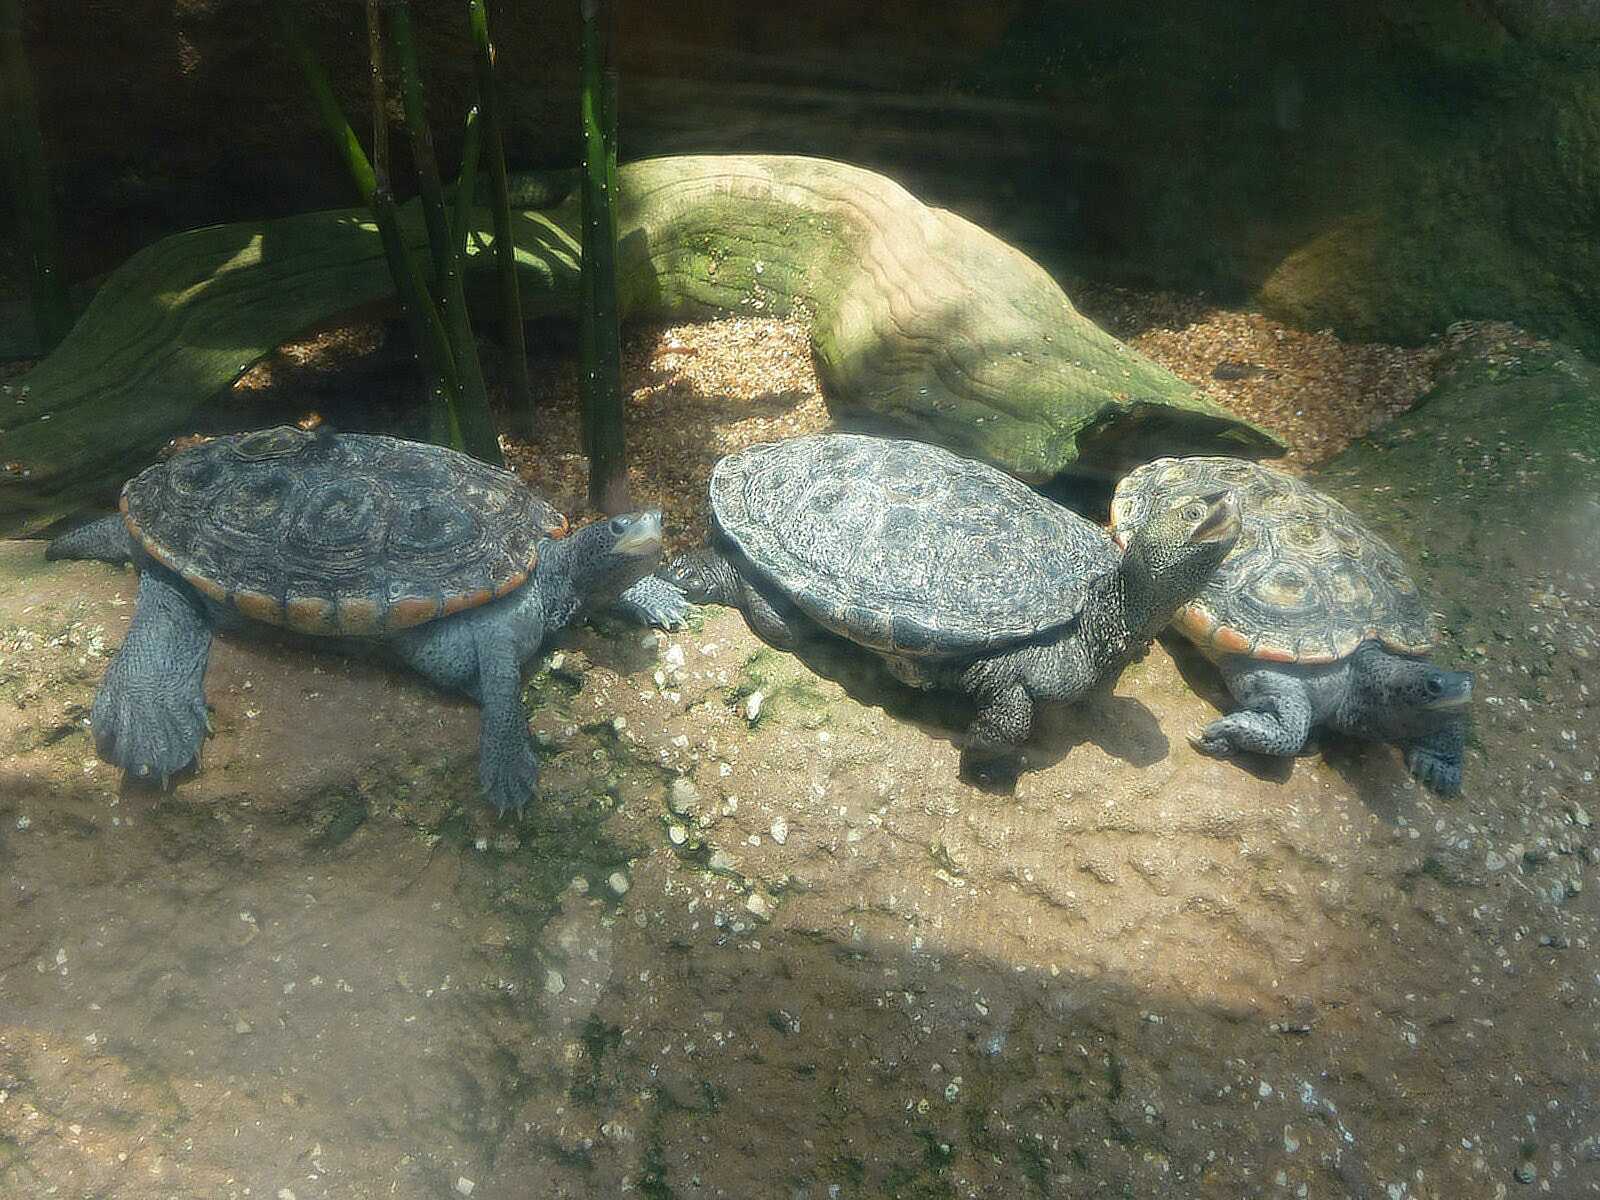 3 turtles